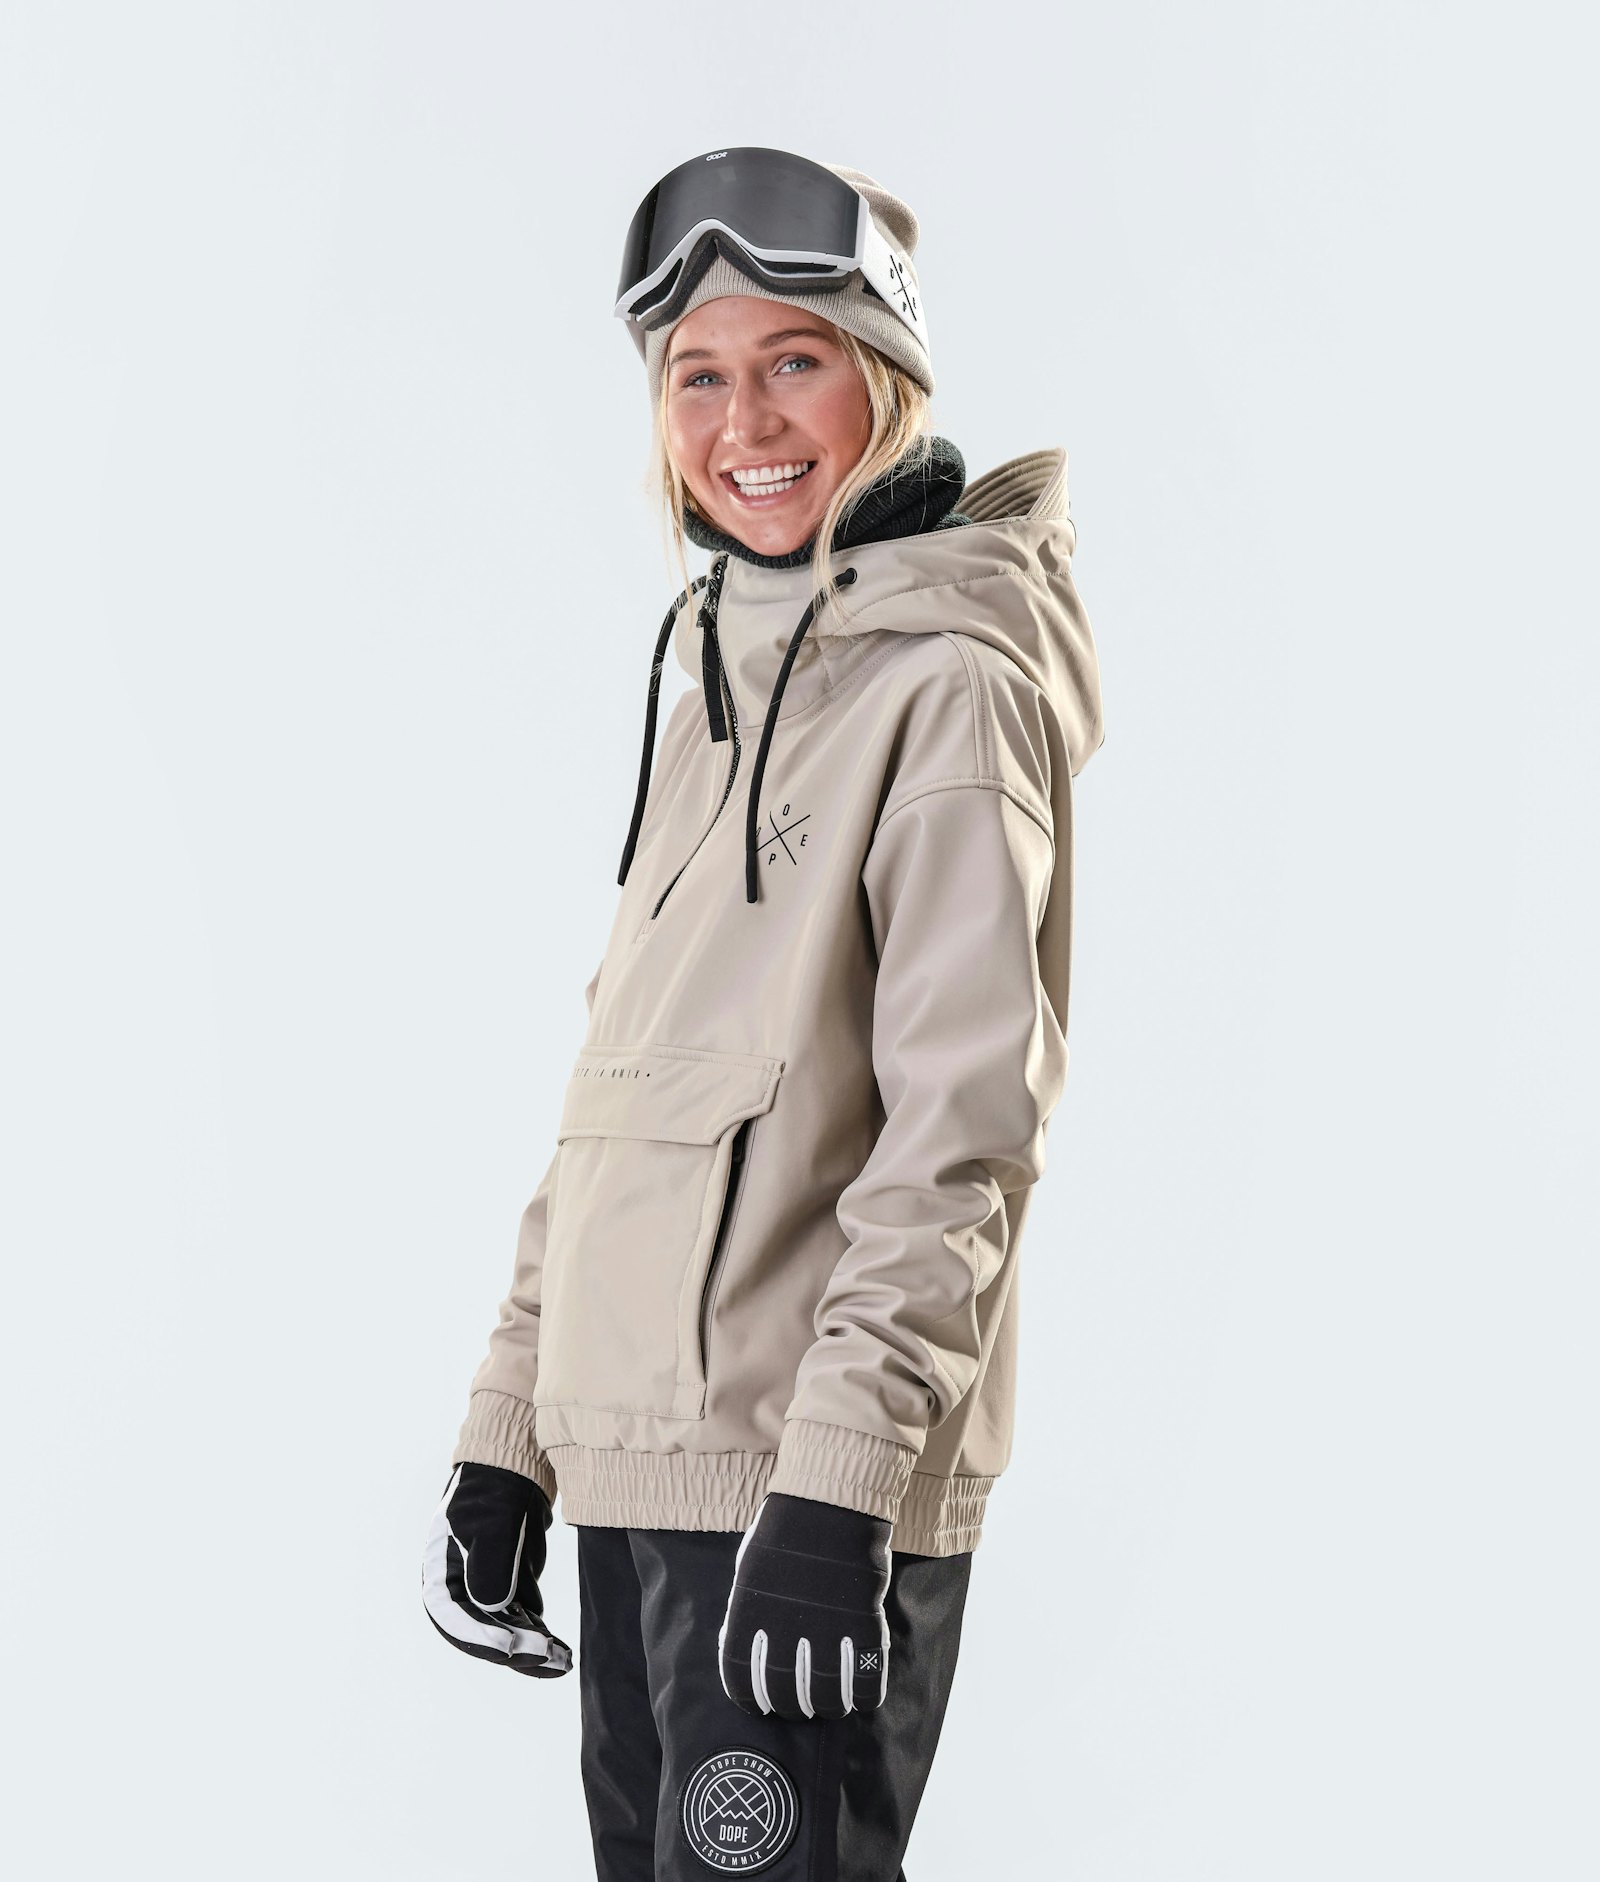 Cyclone W 2020 Ski Jacket Women Sand